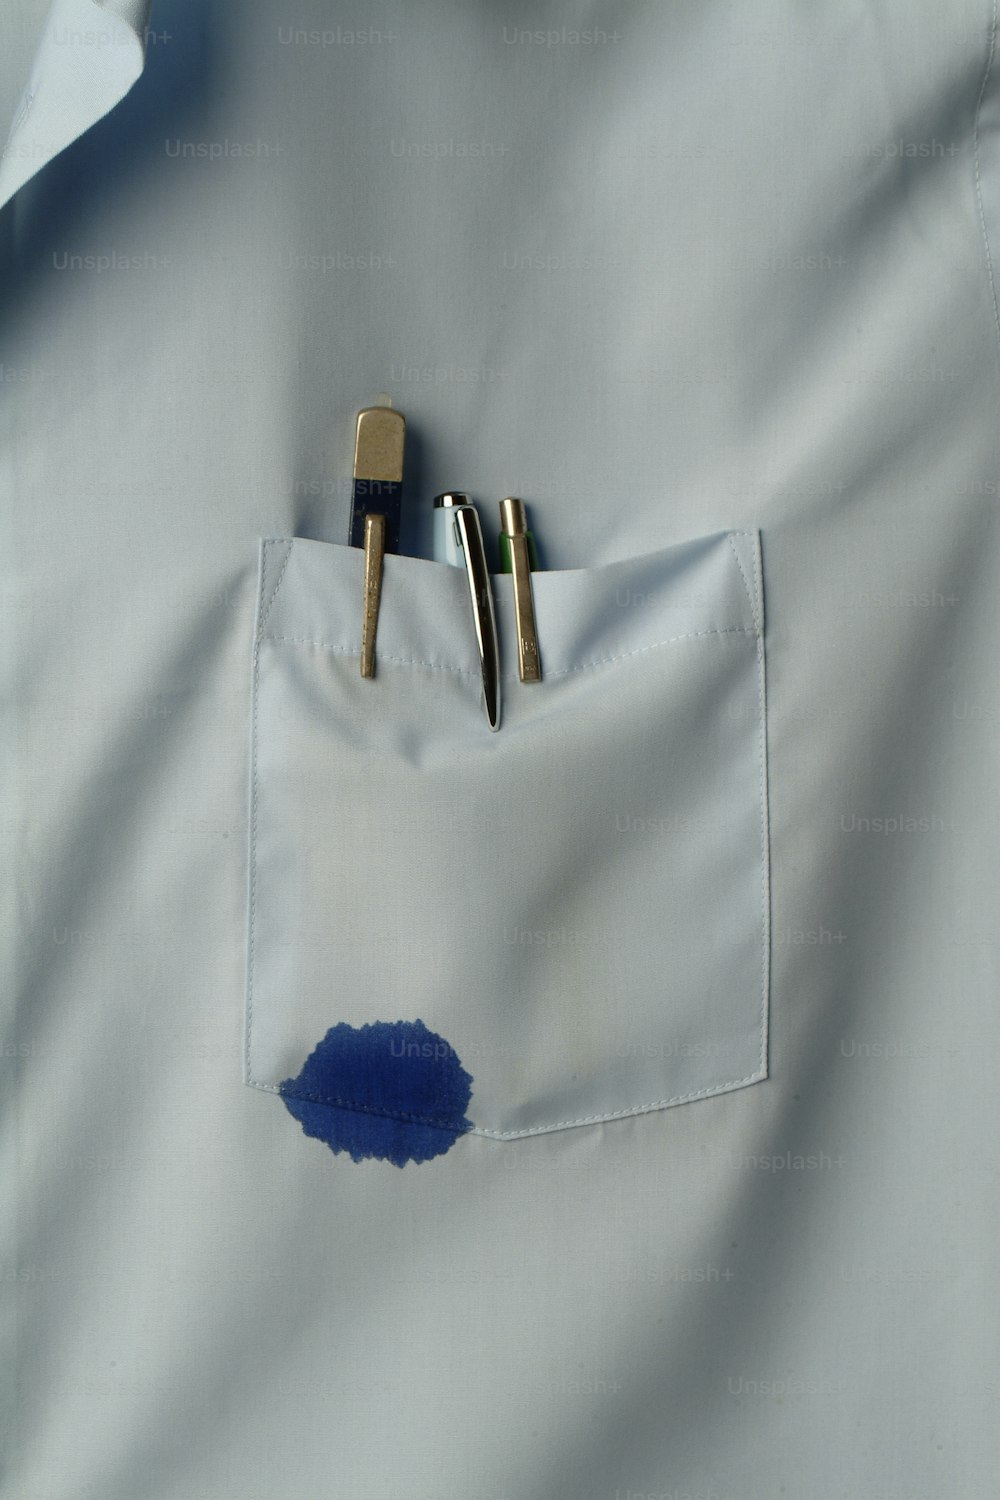 Nahaufnahme einer Hemdtasche, die mehrere Stifte enthält, von denen einer blaue Tinte austritt, Kalifornien, 1970er Jahre. (Foto von Tom Kelley / Getty Images)